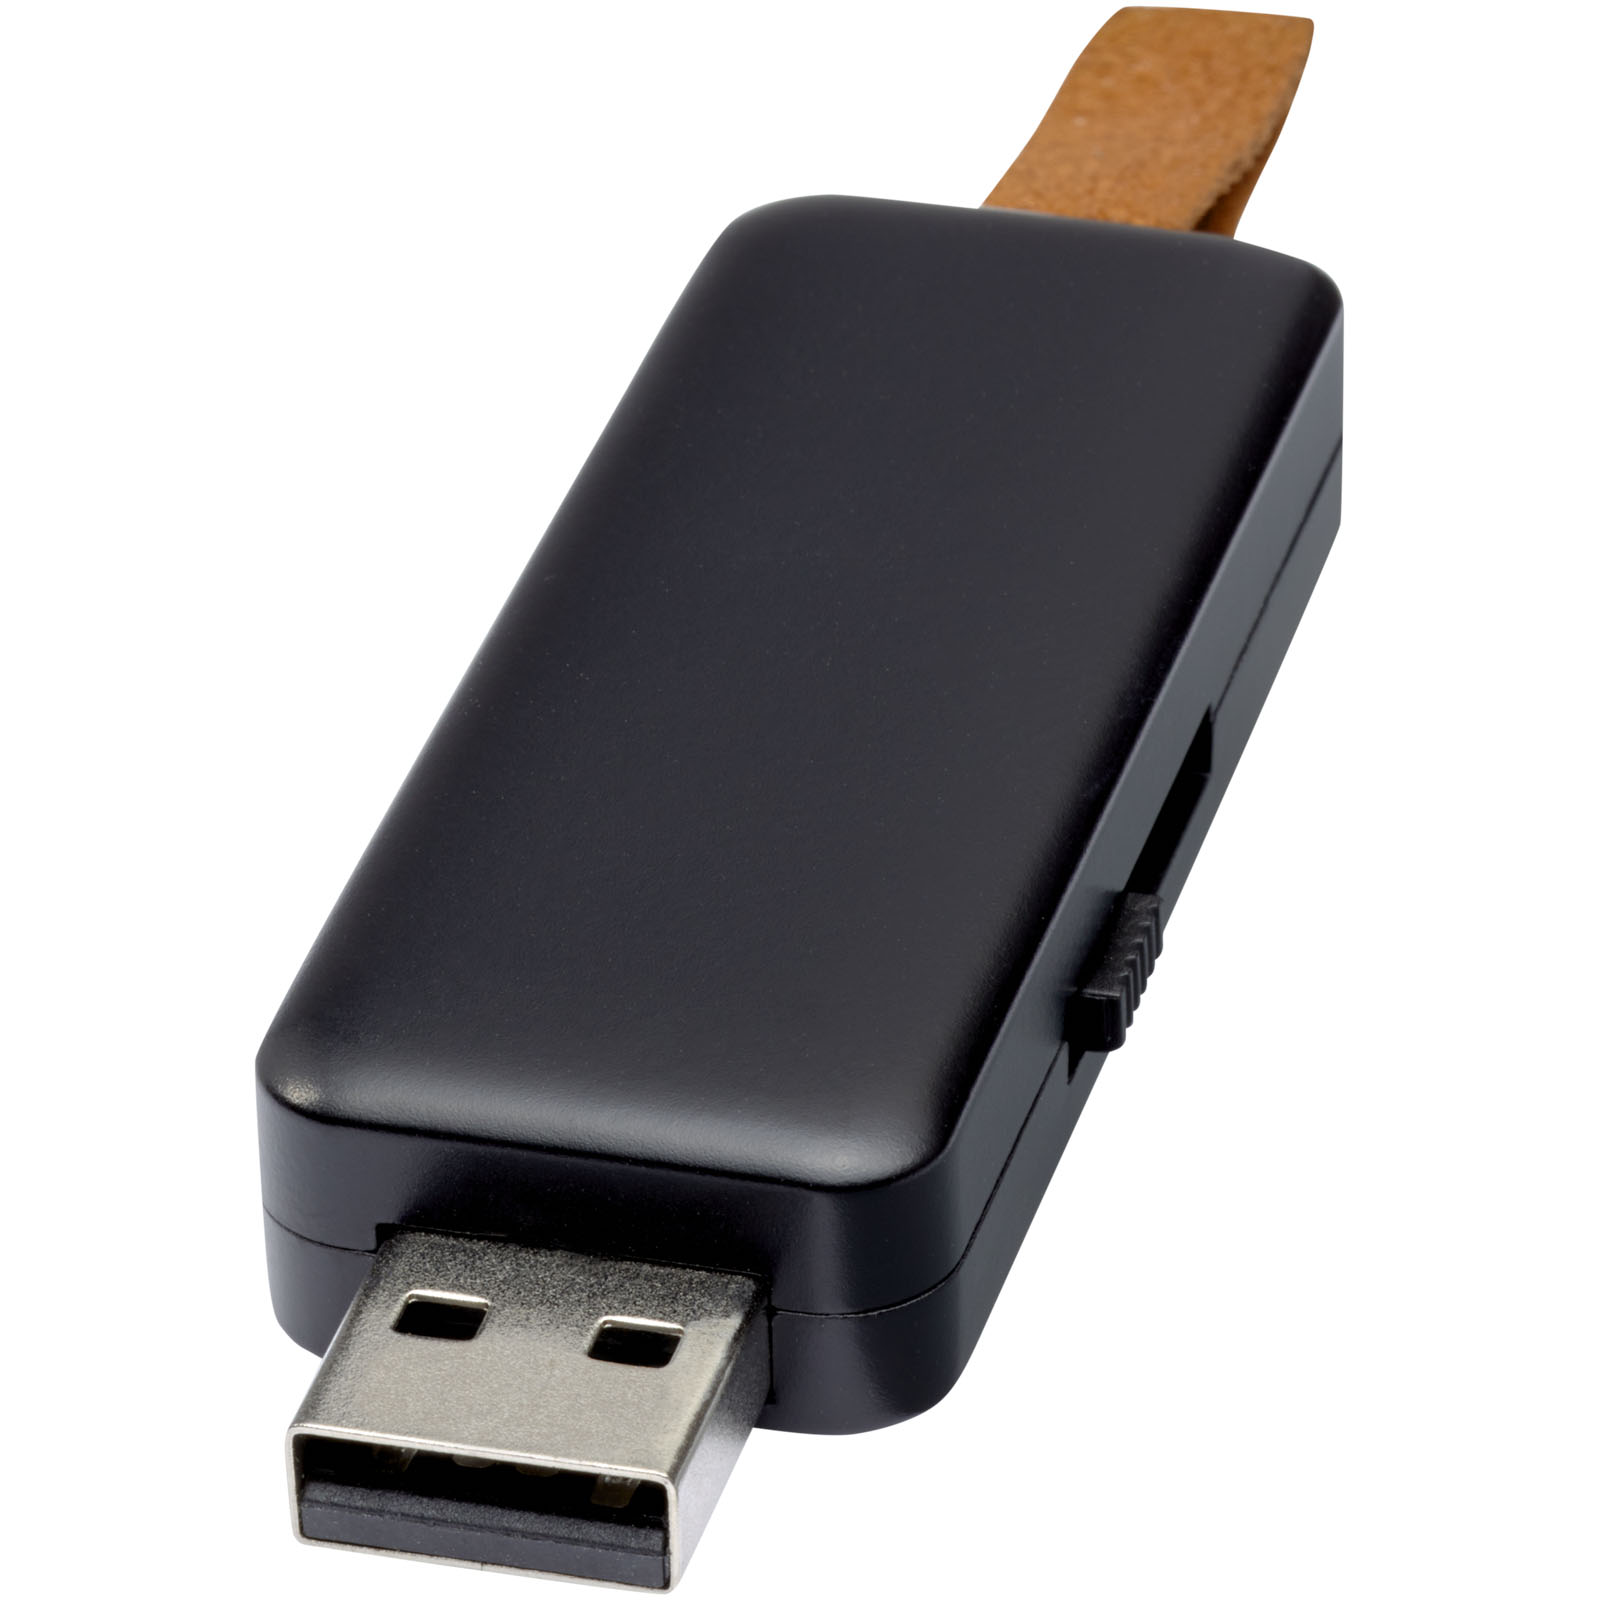 USB Flash Drives - Gleam 4GB light-up USB flash drive